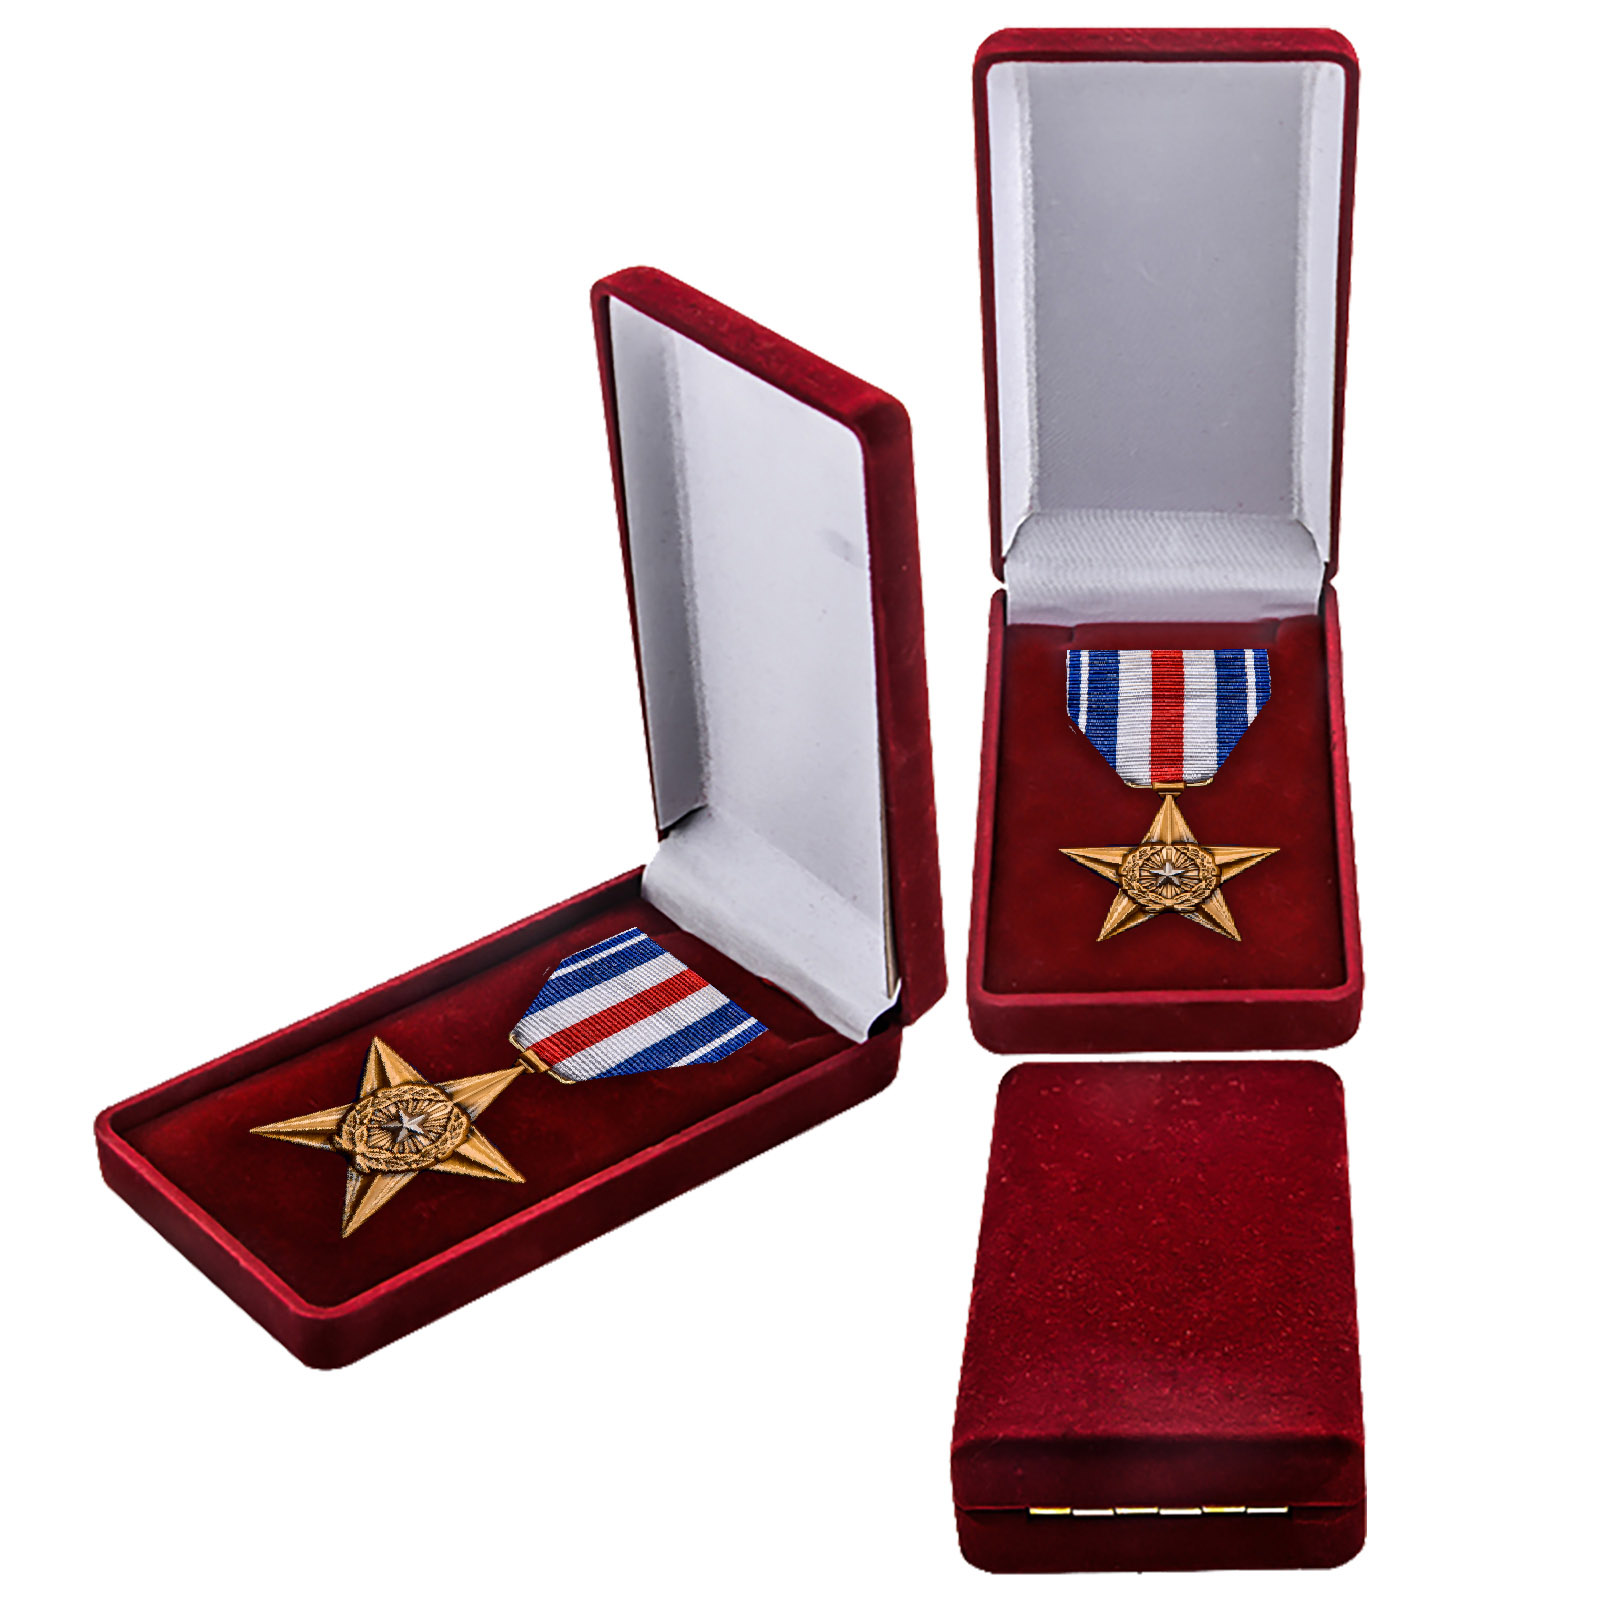 Купить медаль Серебряная звезда (США) по экономичной цене